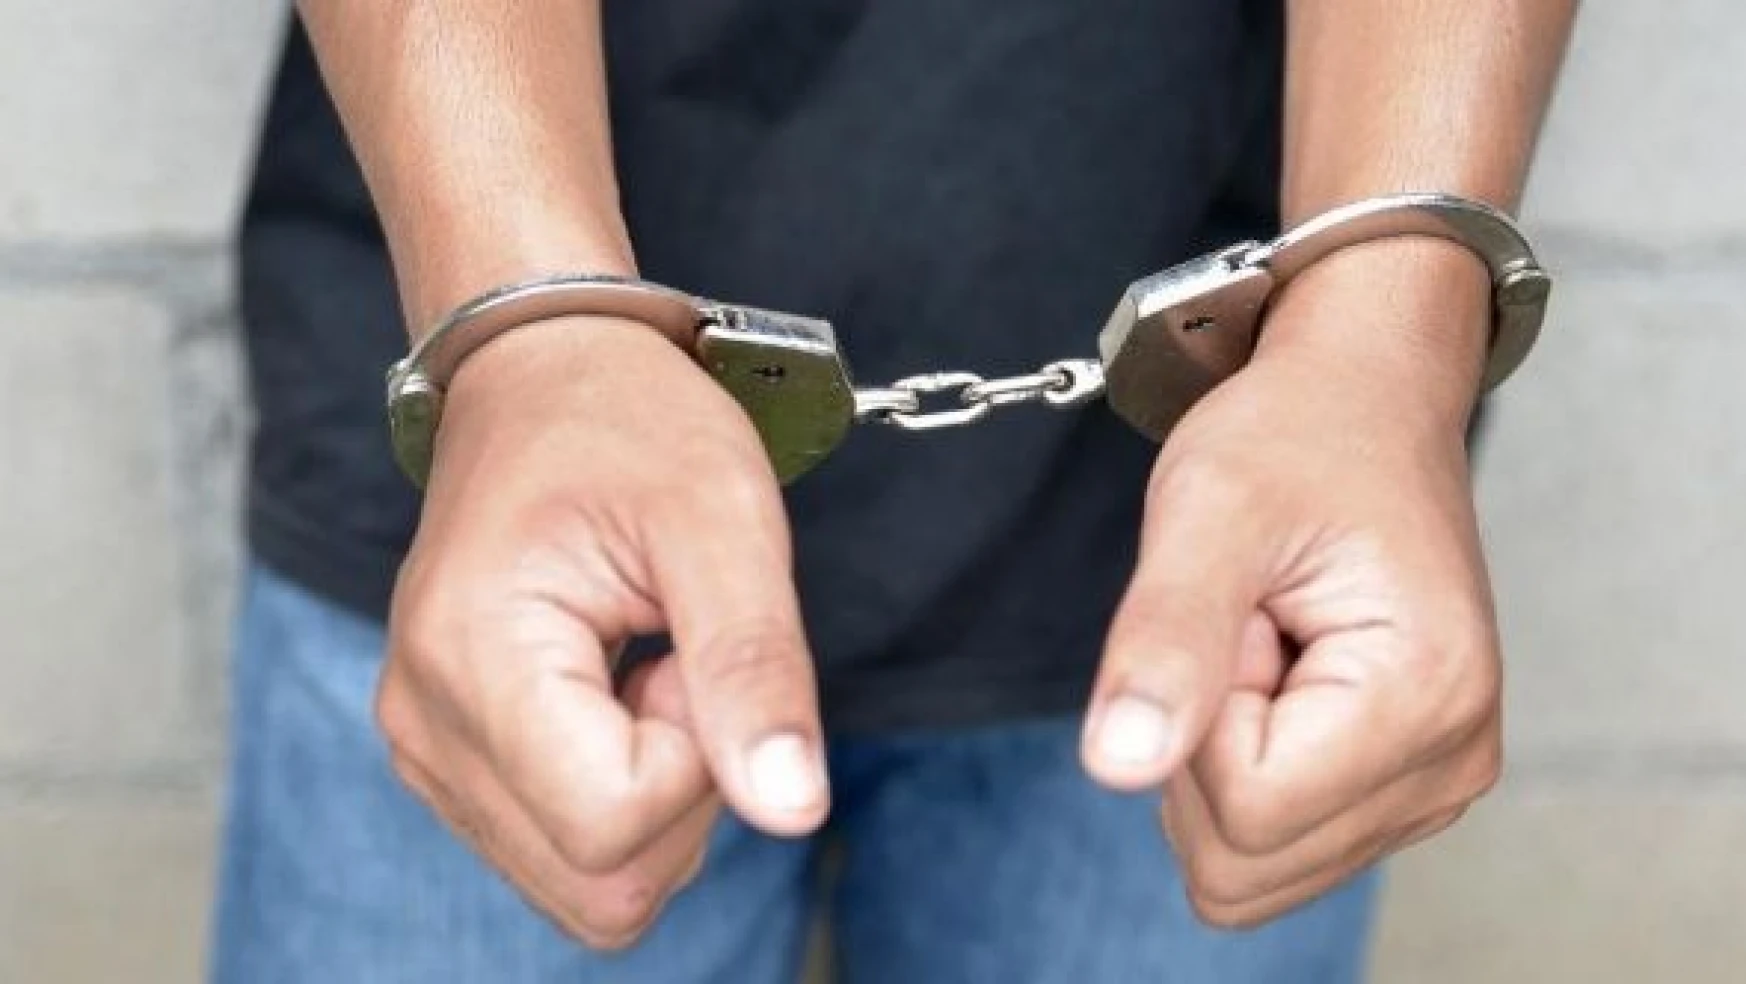 Erzurum'da hırsızlık yapan 3 kişi tutuklandı